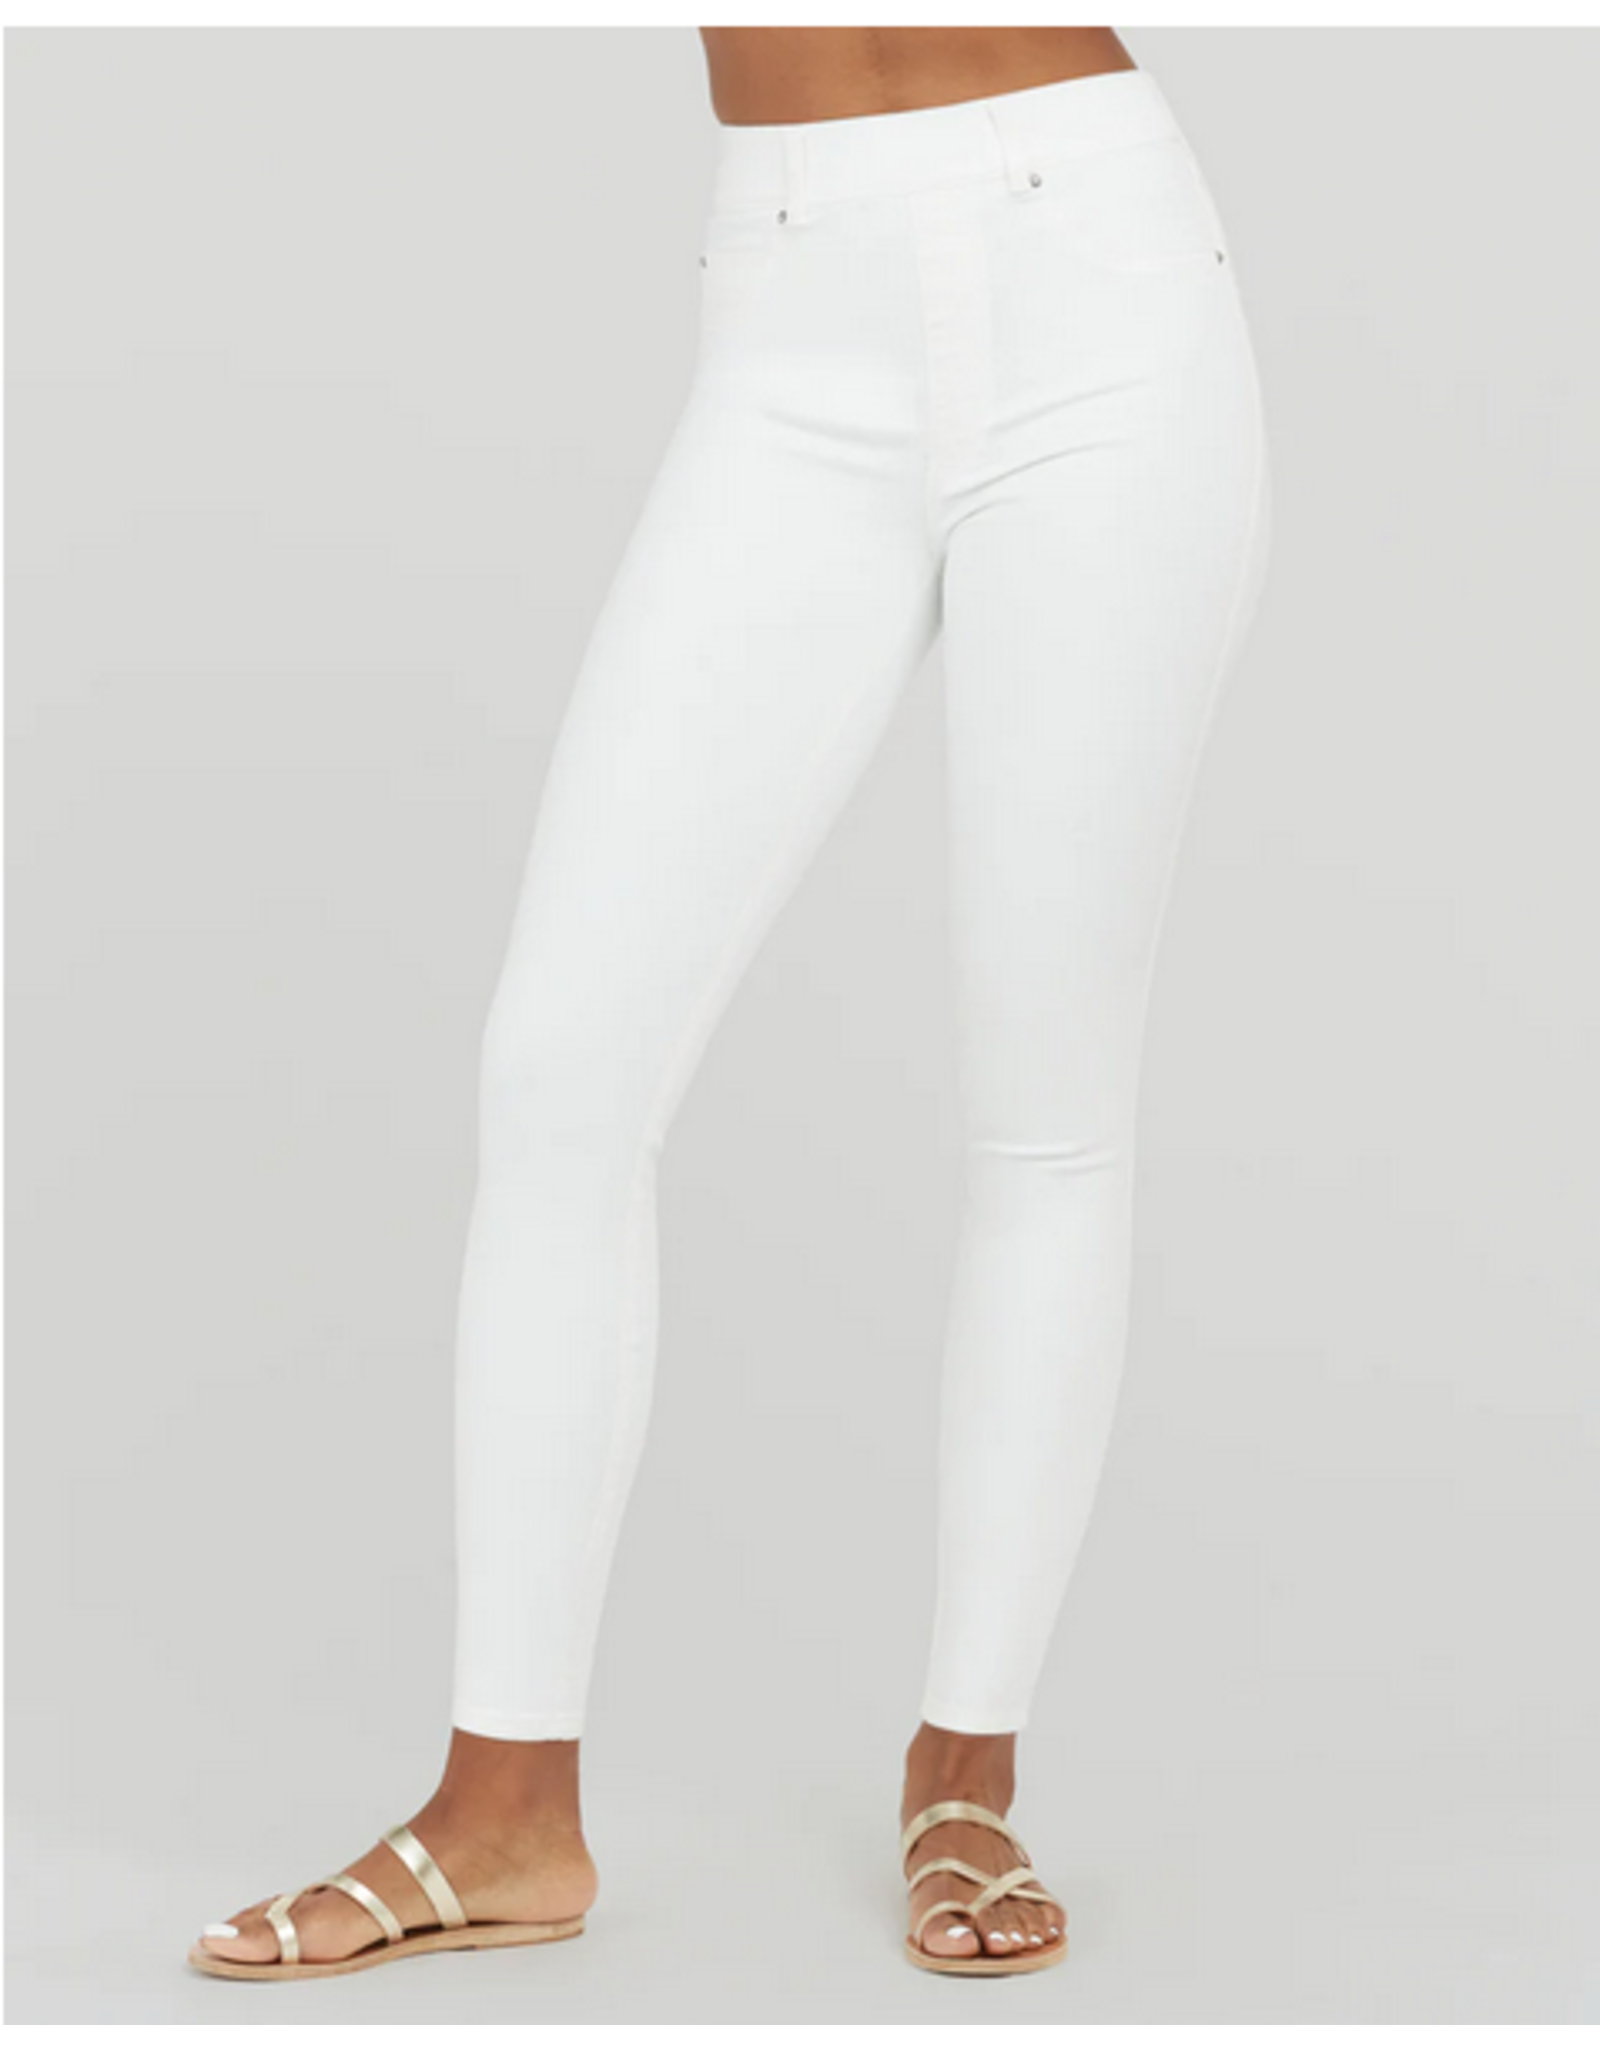 Spanx Skinny White Jean